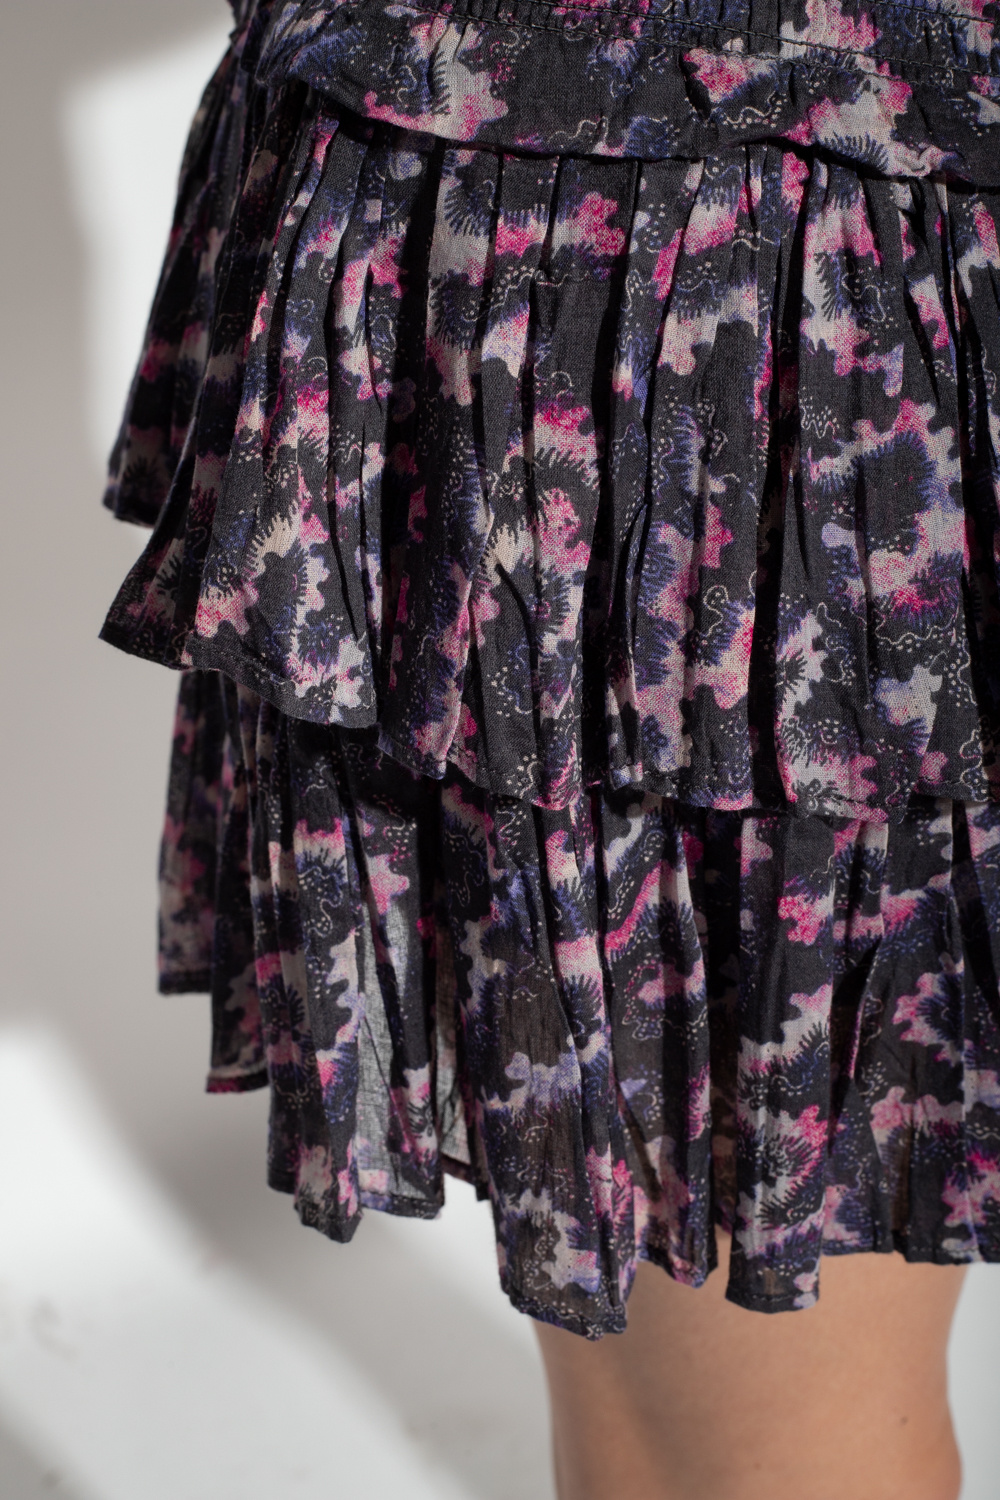 Marant Etoile ‘Naomi’ patterned skirt